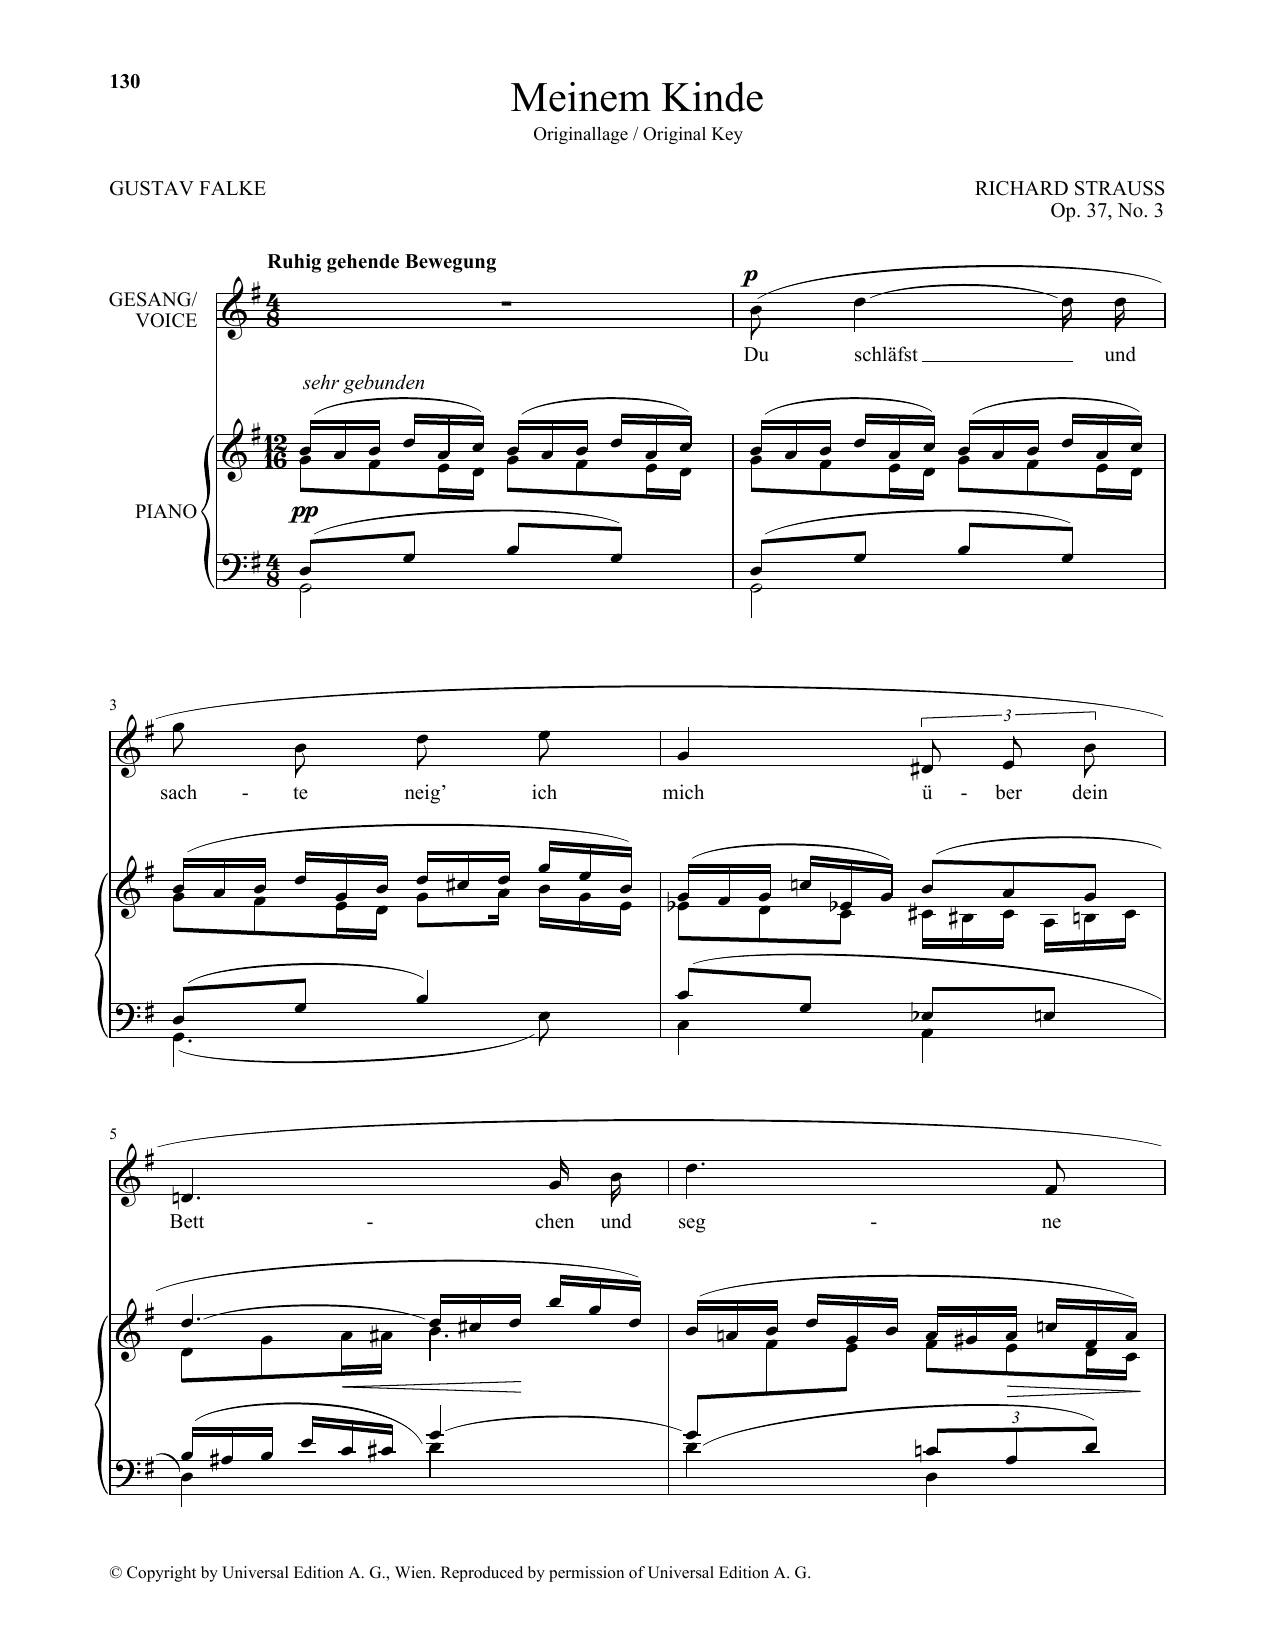 Download Richard Strauss Meinem Kinde (High Voice) Sheet Music